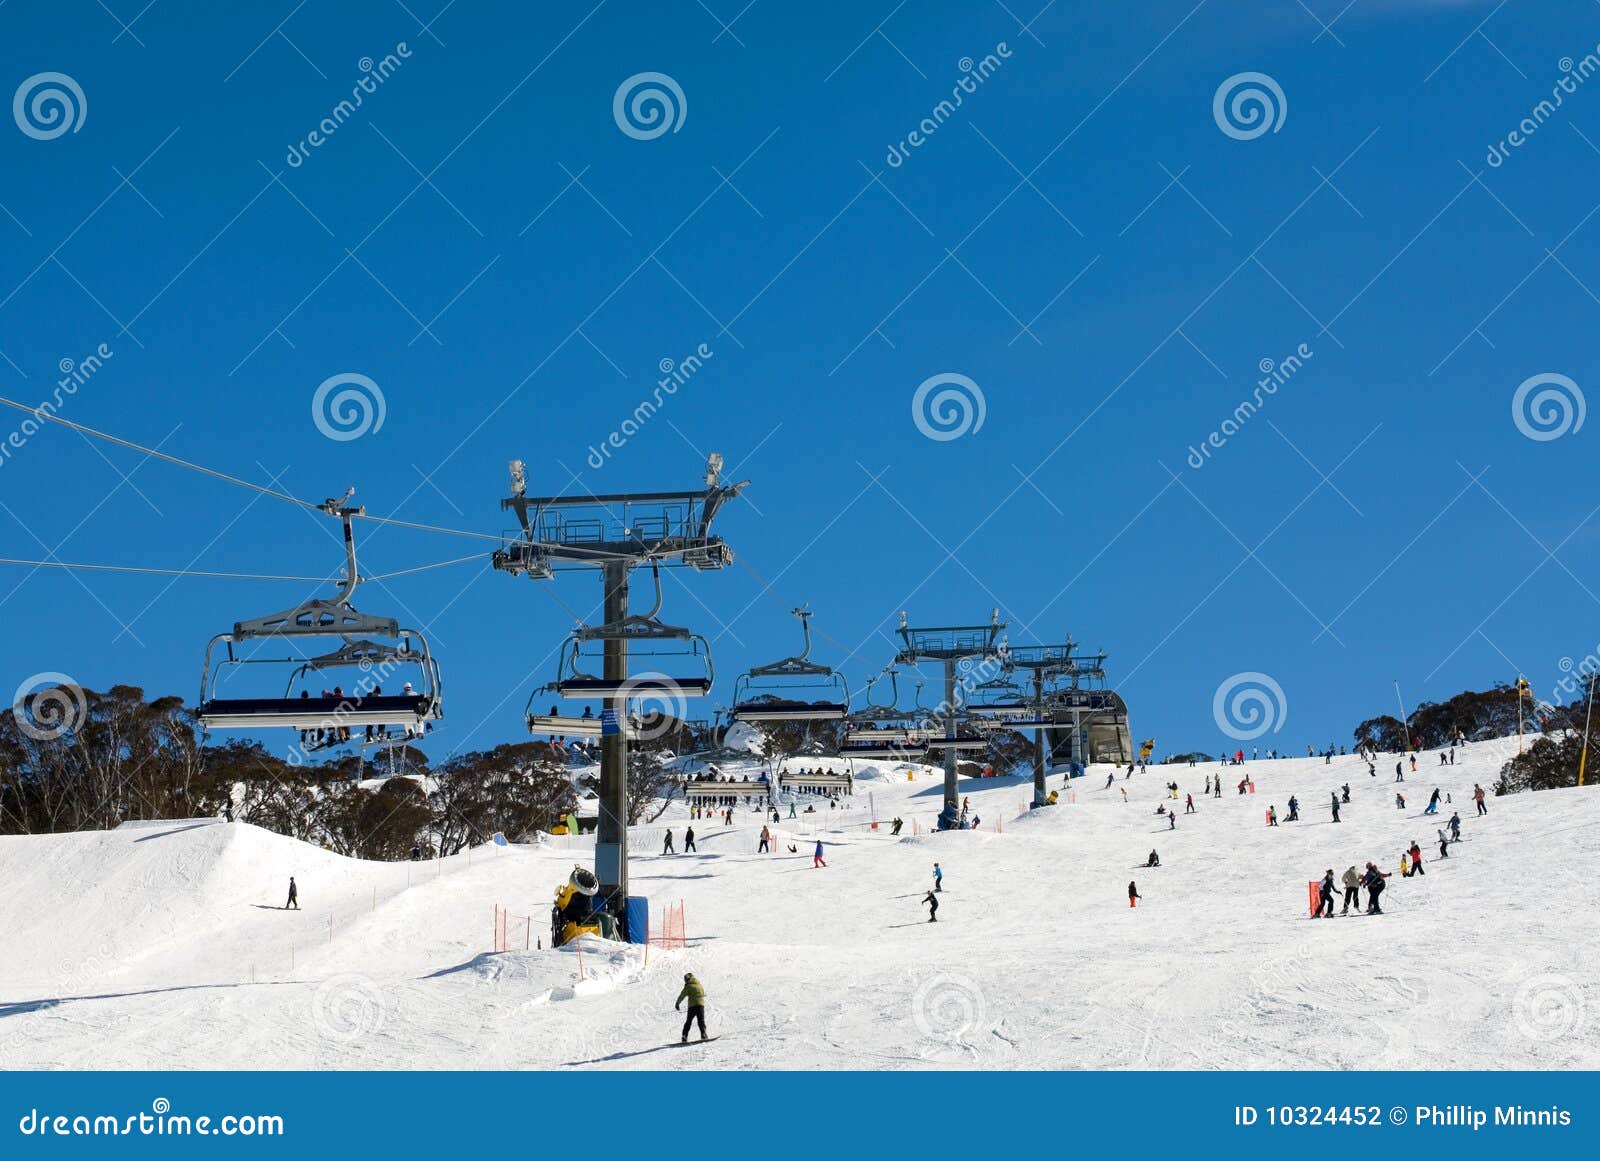 snow skiers